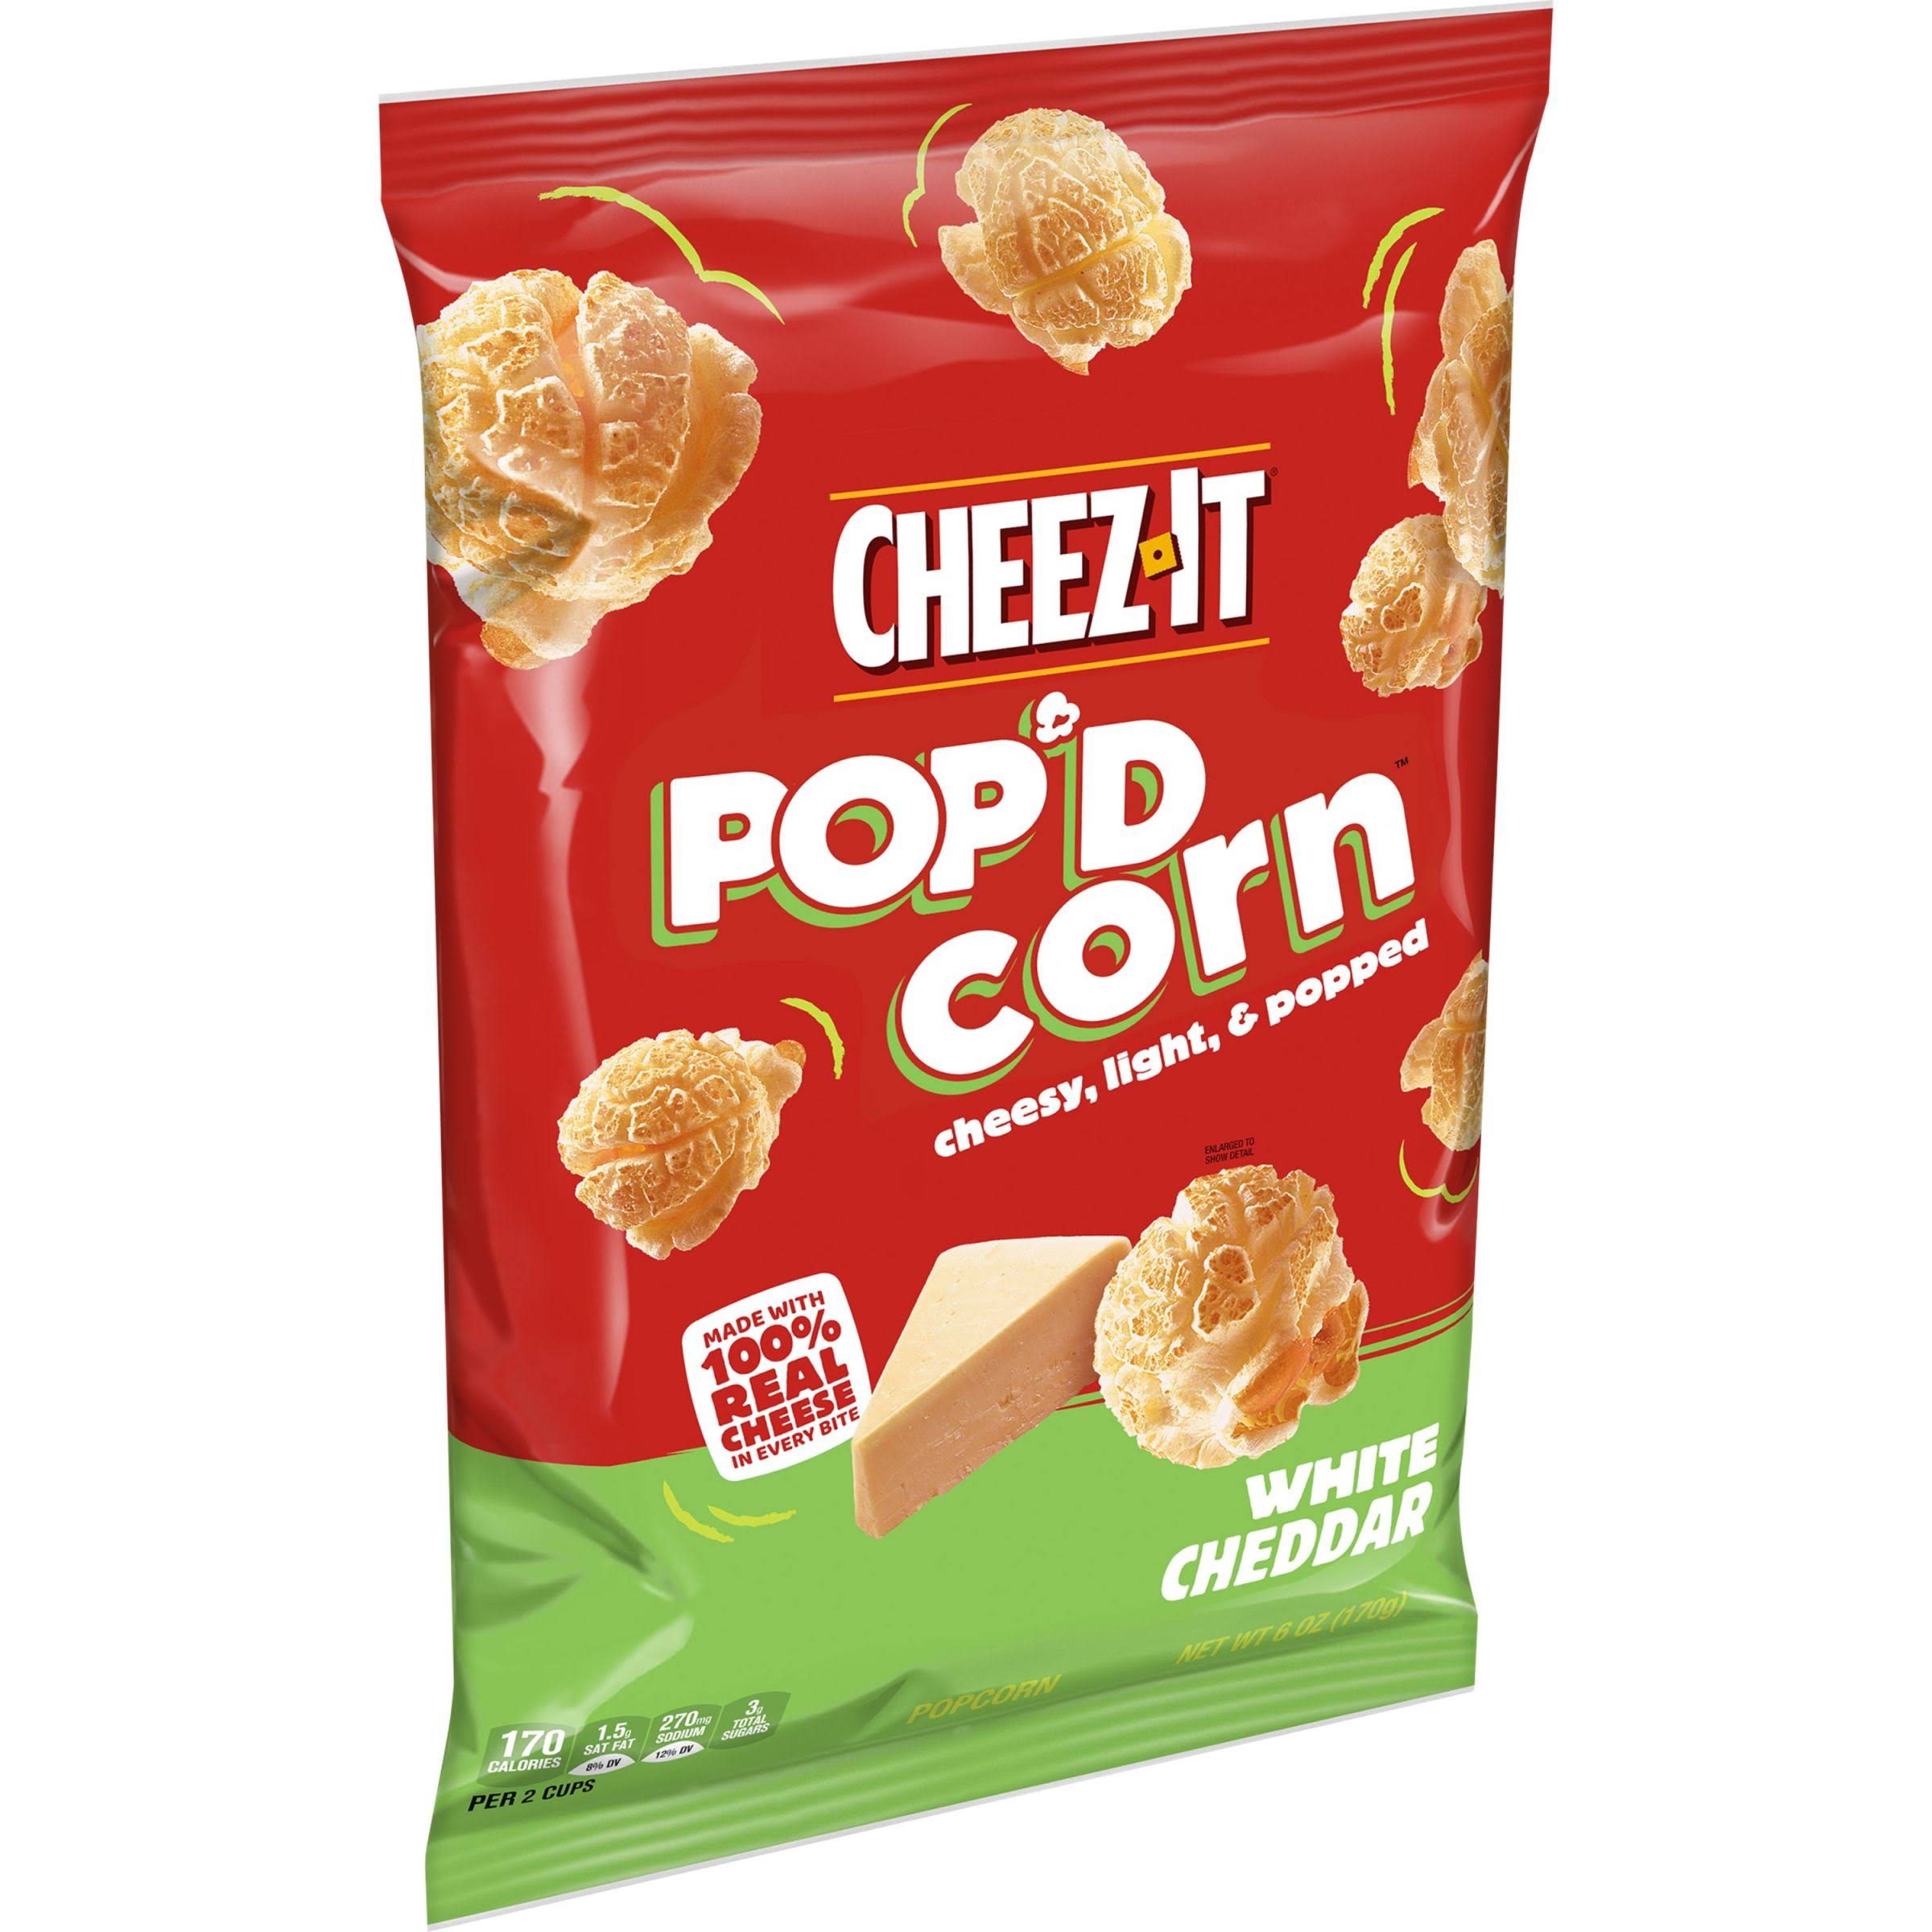 Cheez-It Pop'd Corn Popcorn, White Cheddar - 6 oz